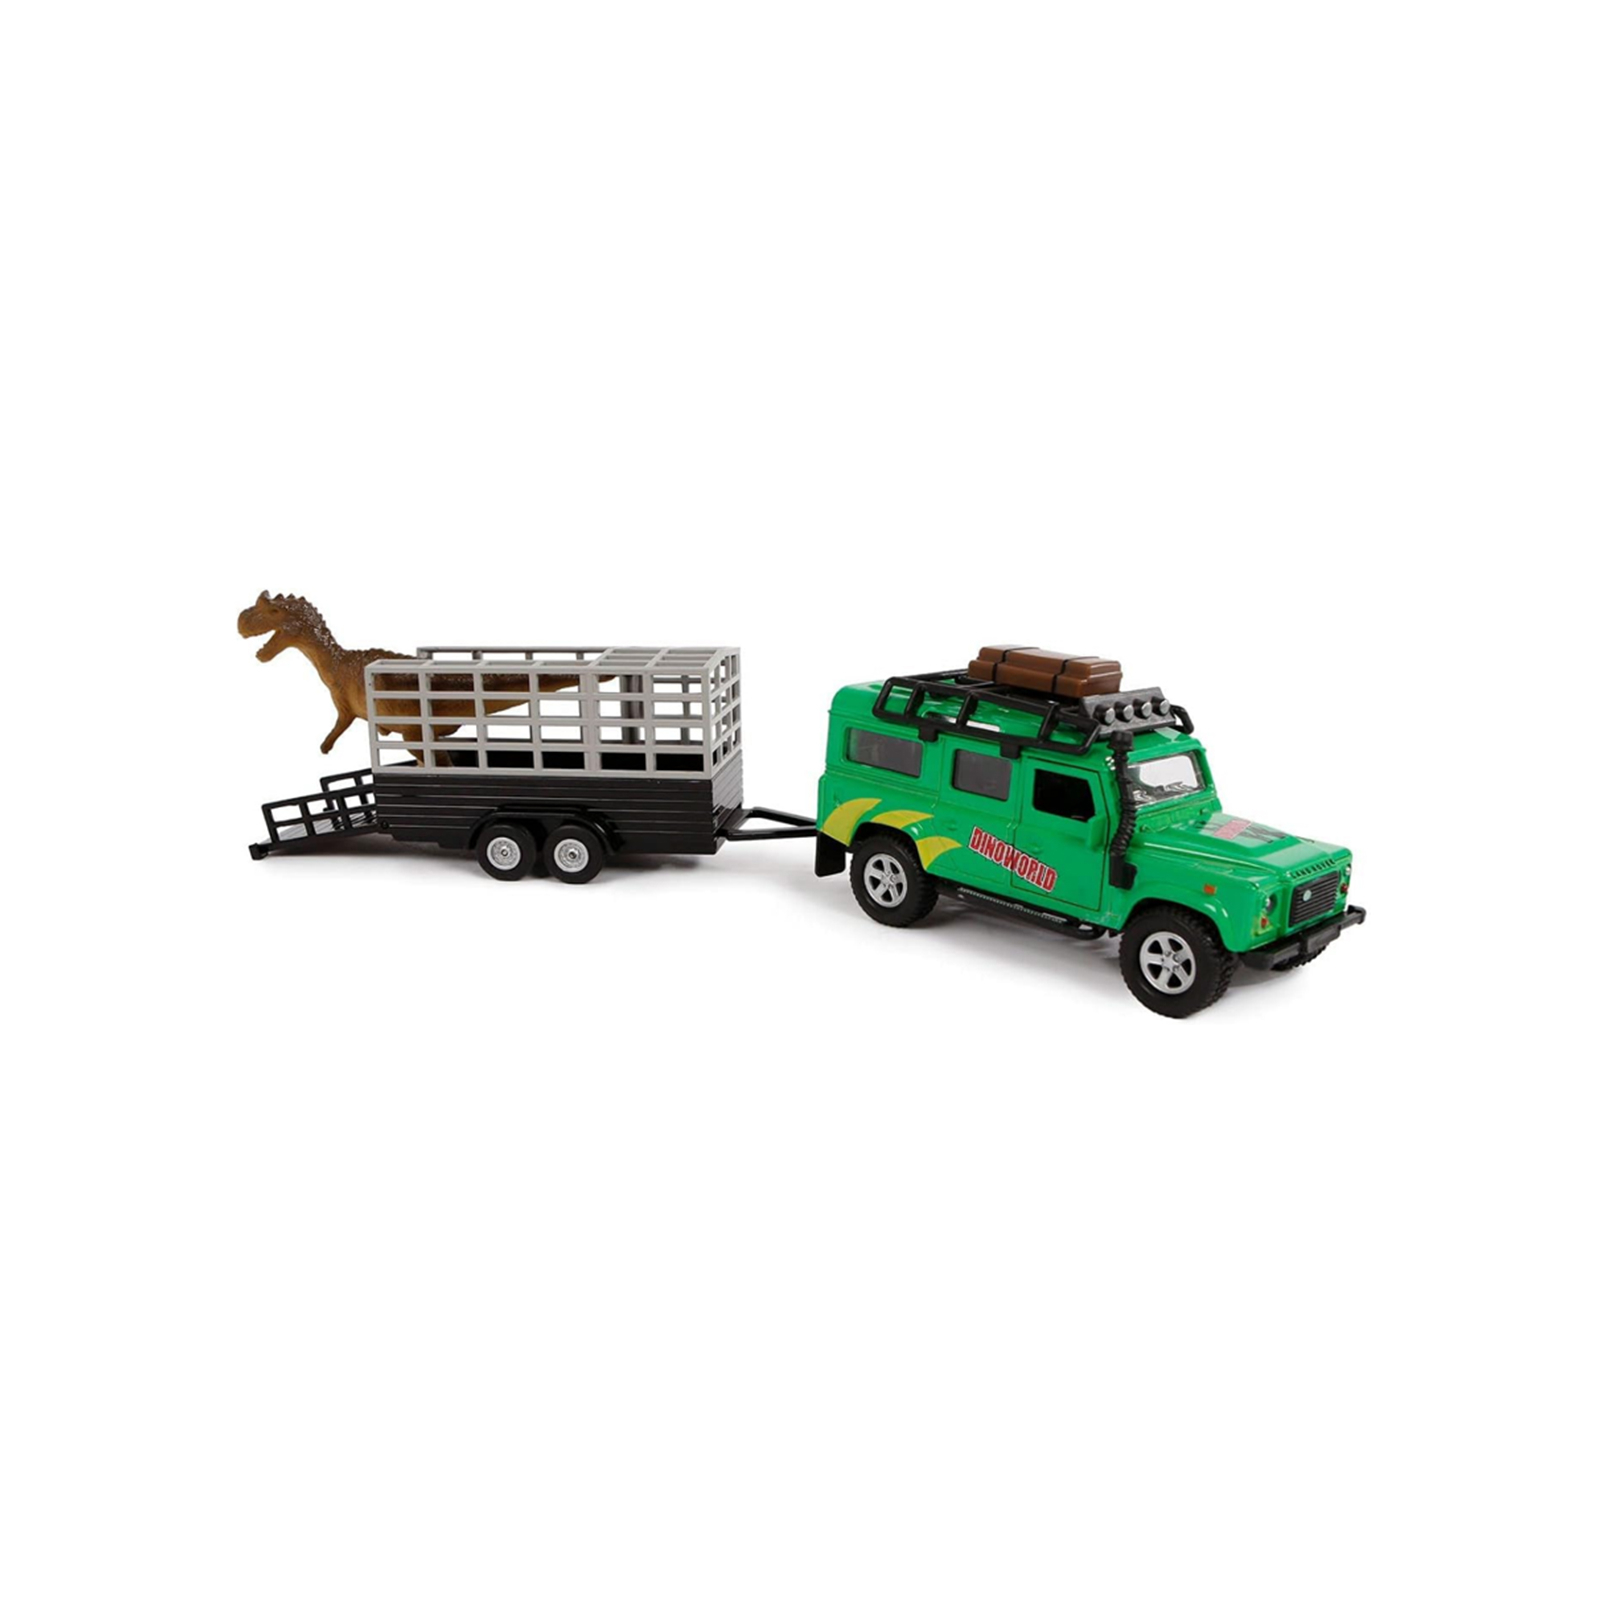 Машина Techno Drive Land Rover с прицепом и динозавром (520178.270)